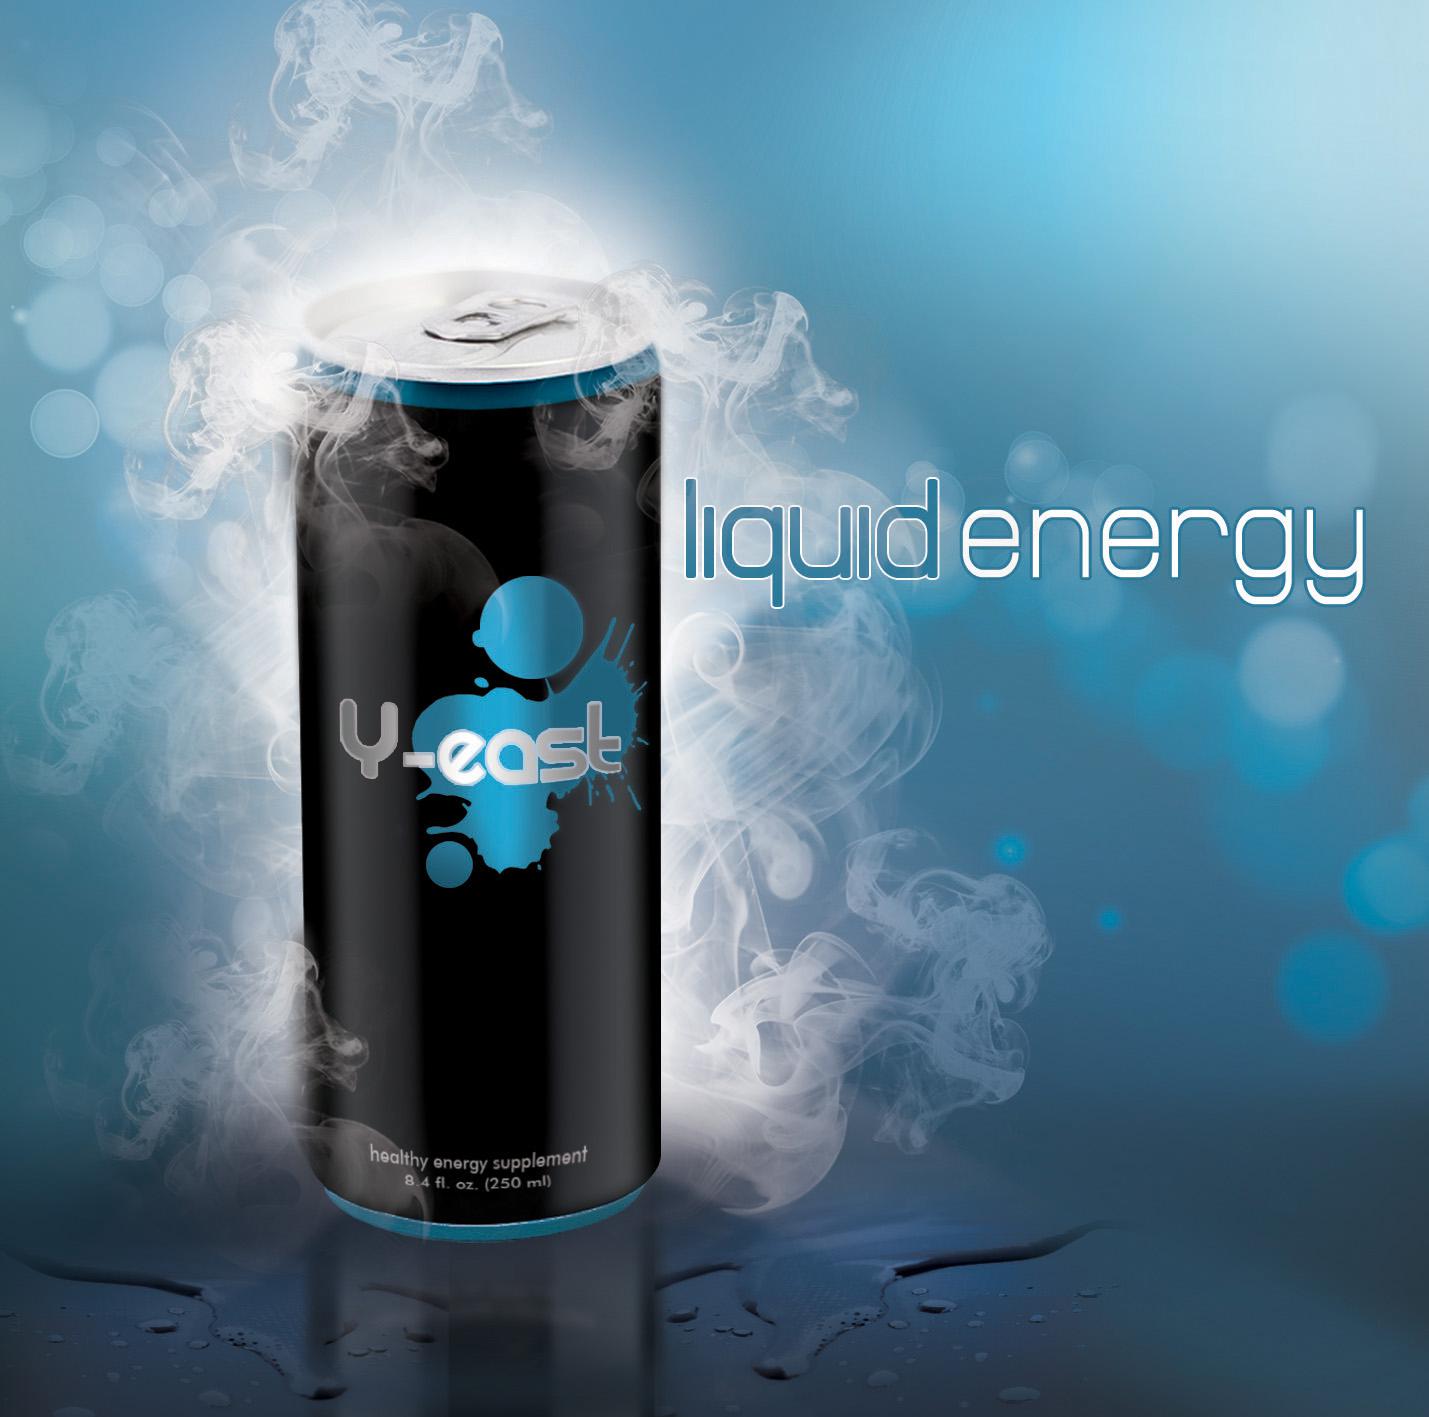 Y-East_Liquid Energy